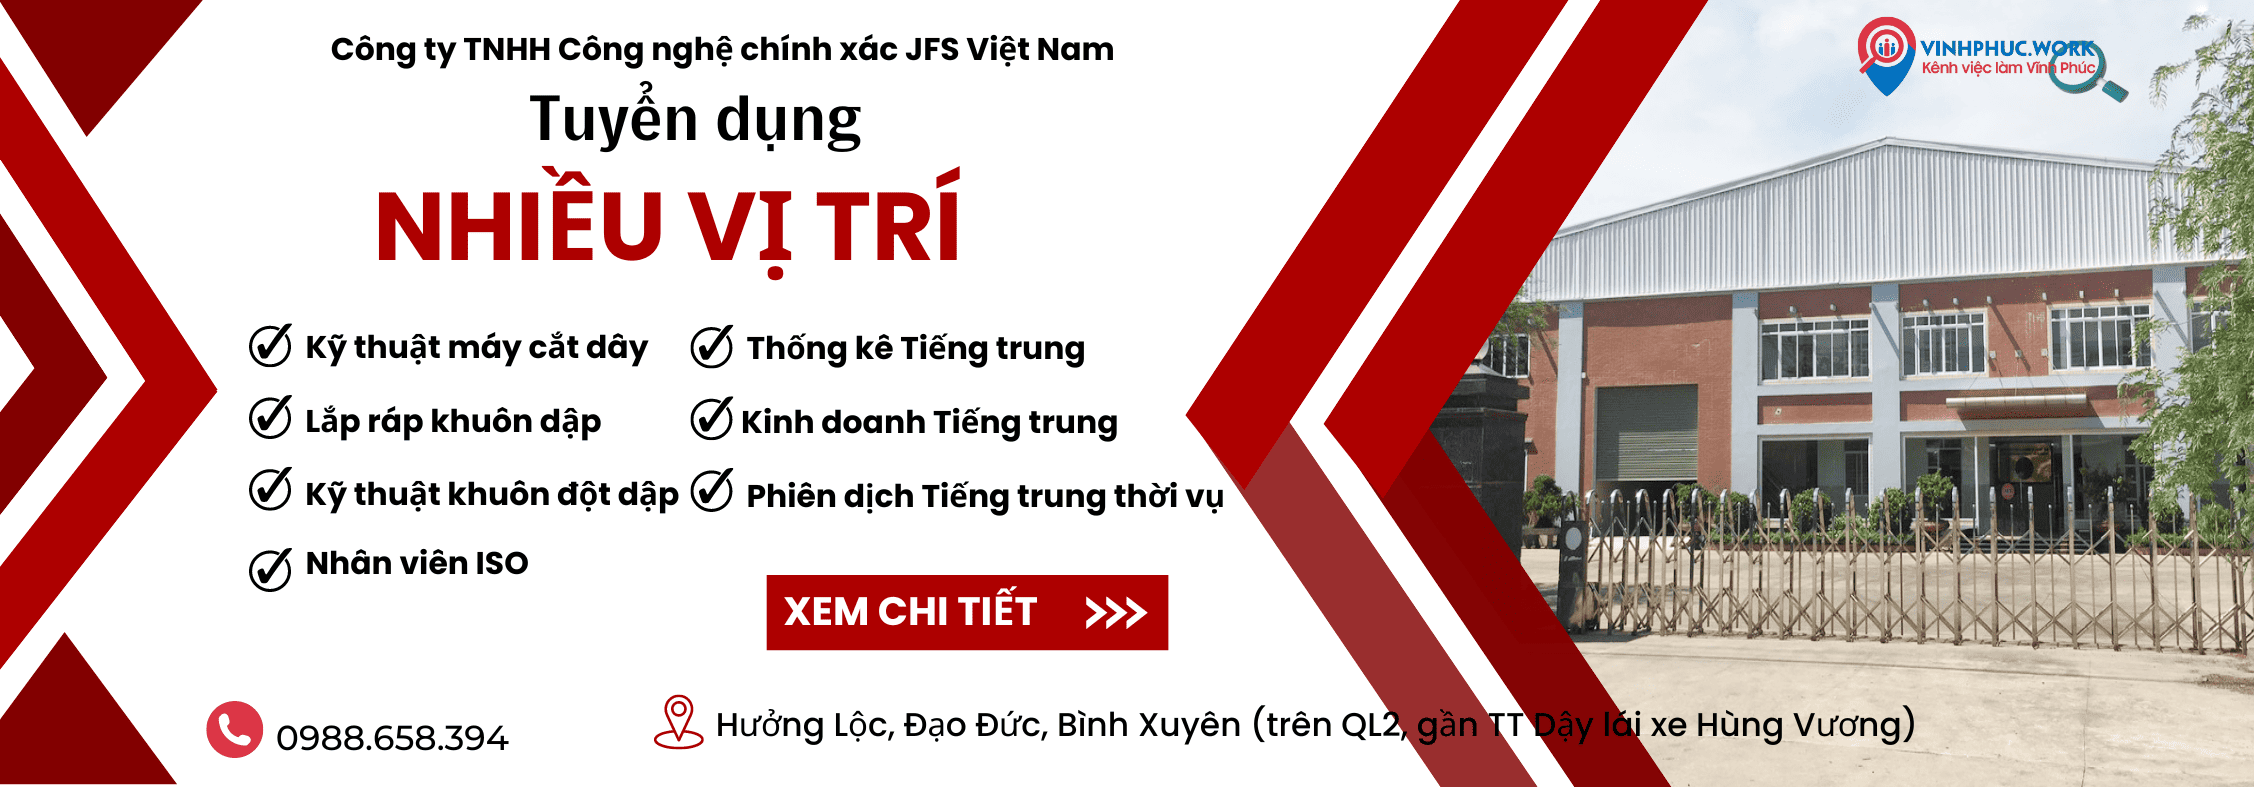 Mo Rong San Xuat Cong Ty Tnhh Cong Nghe Chinh Xac Jfs Viet Nam Thong Bao Tuyen Dung Nhieu Vi Tri 8